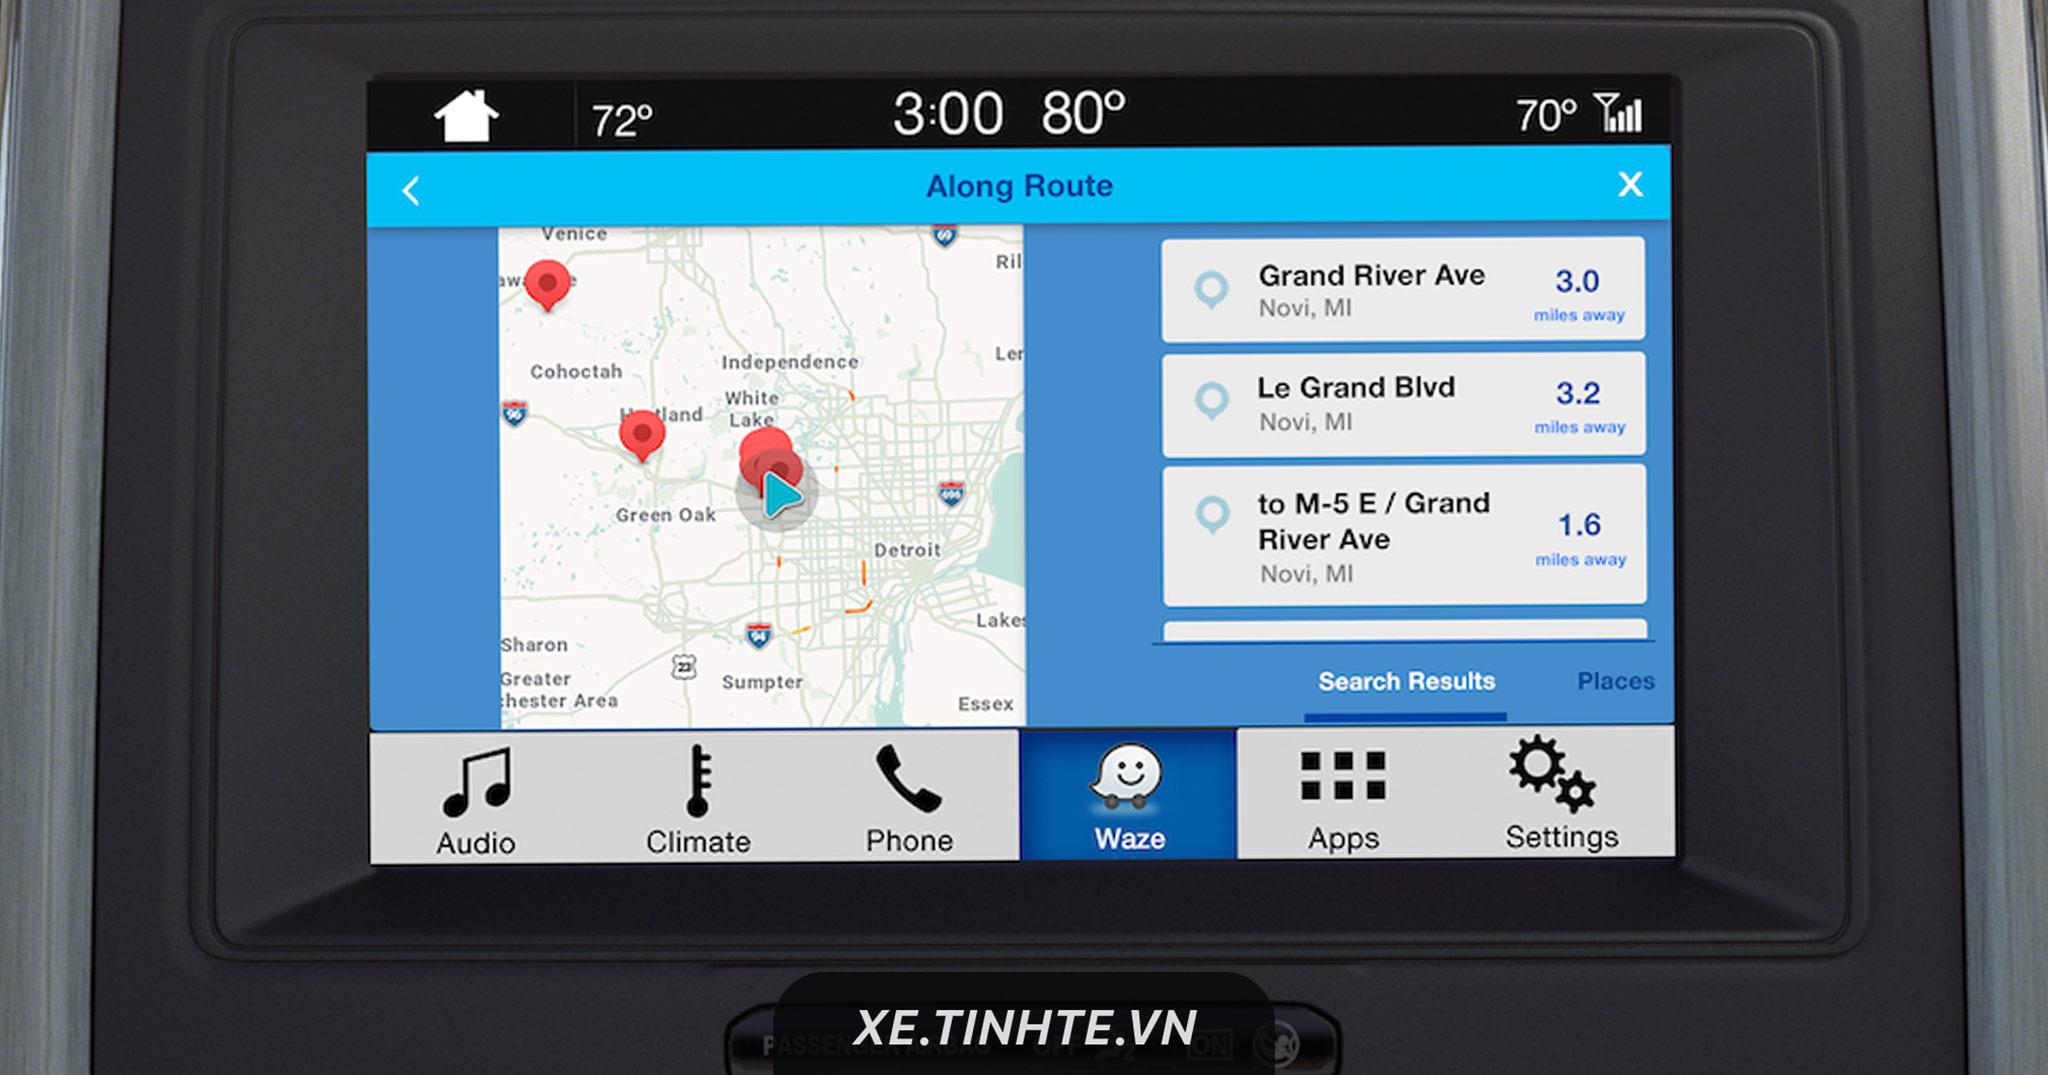 Ứng dụng dẫn đường Waze nâng cấp cho SYNC 3 trên xe Ford, kết nối qua iPhone, có ra lệnh giọng nói